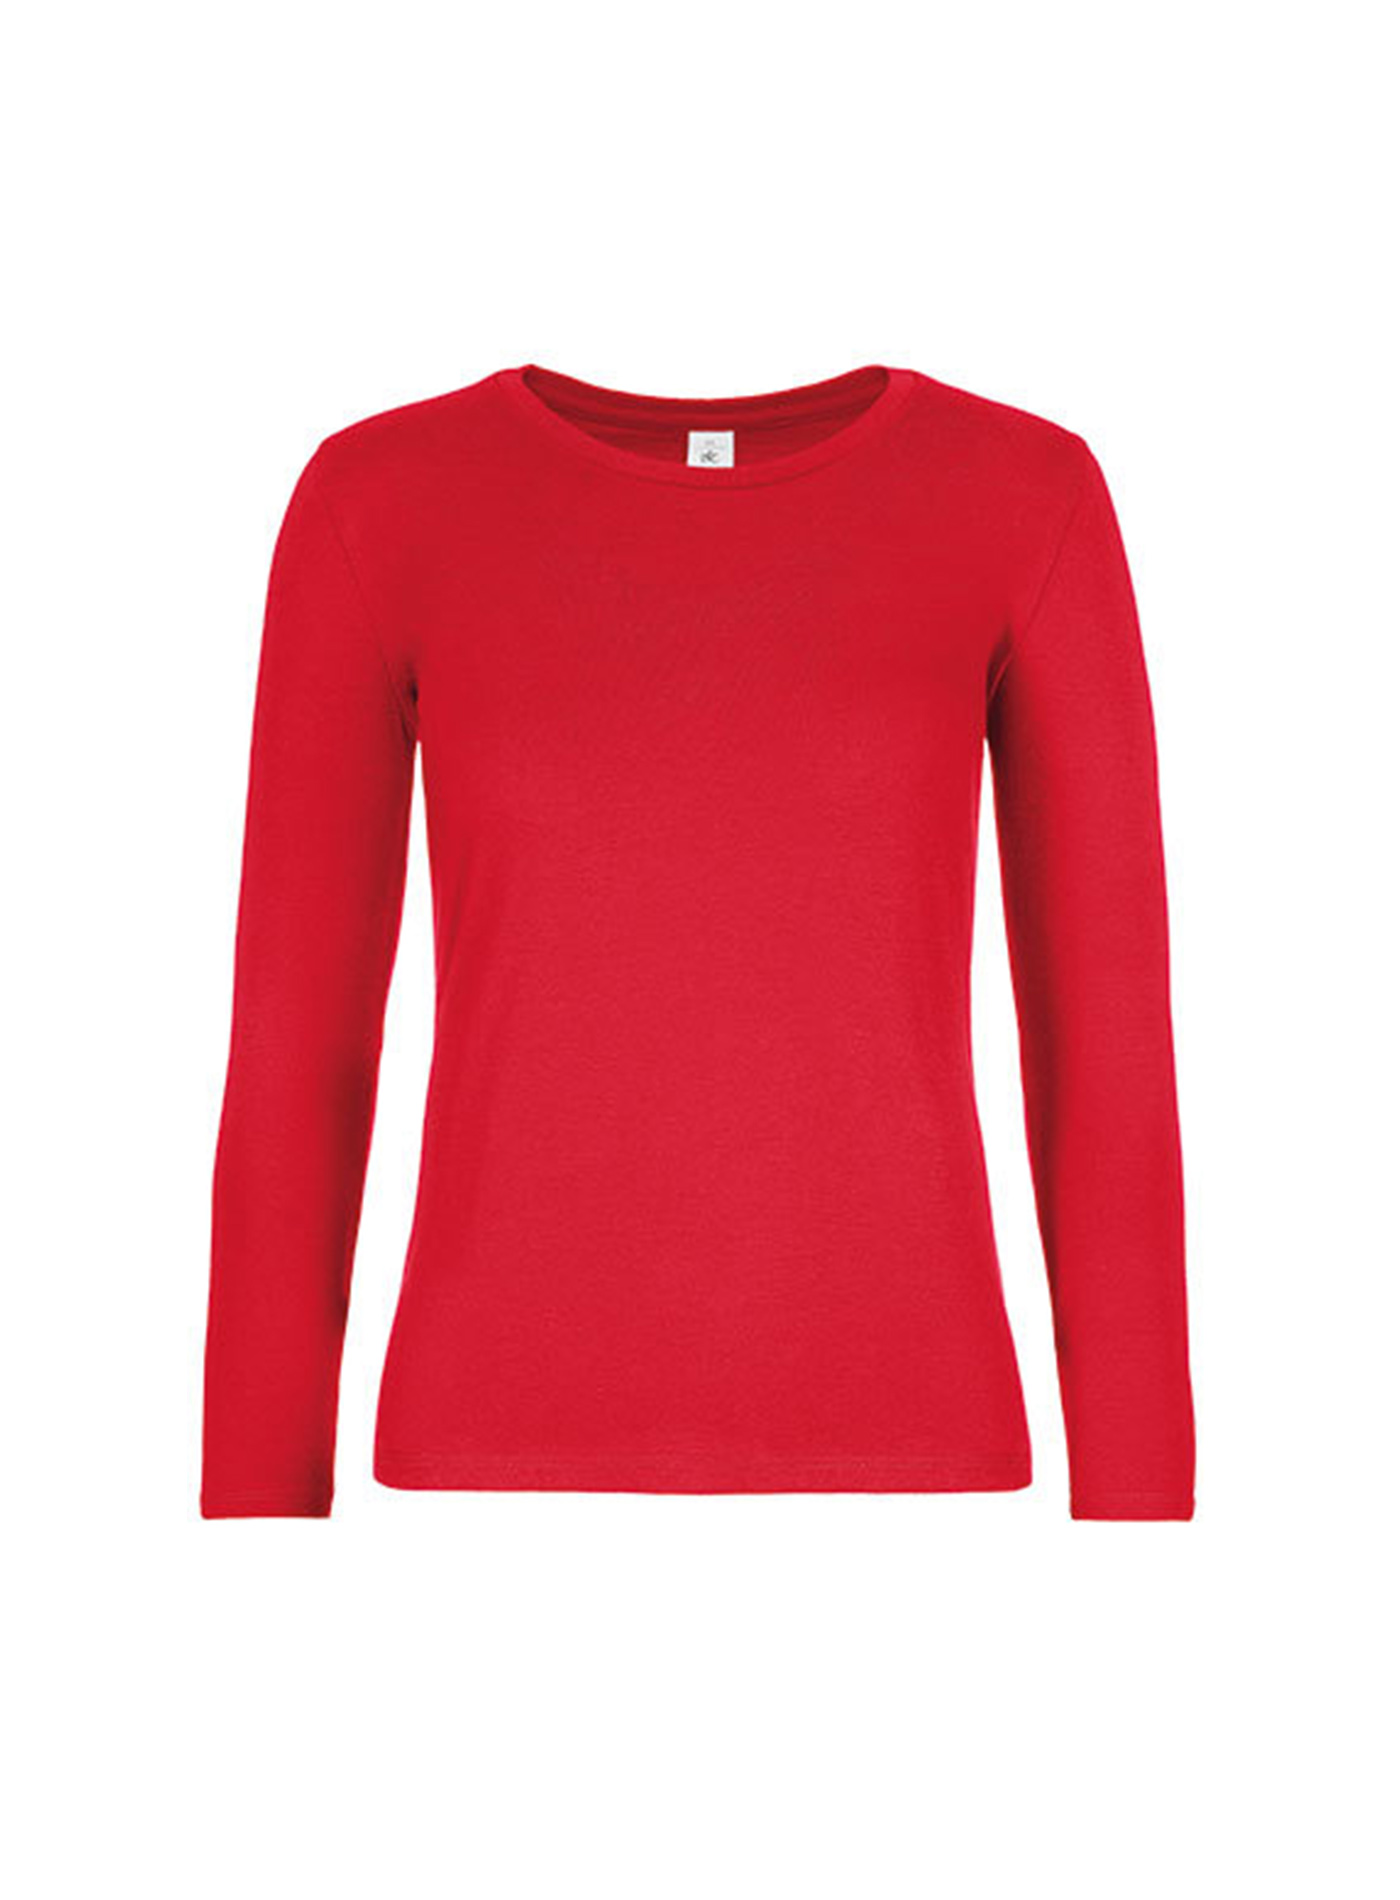 Dámské tričko s dlouhým rukávem B&C Collection - Červená M